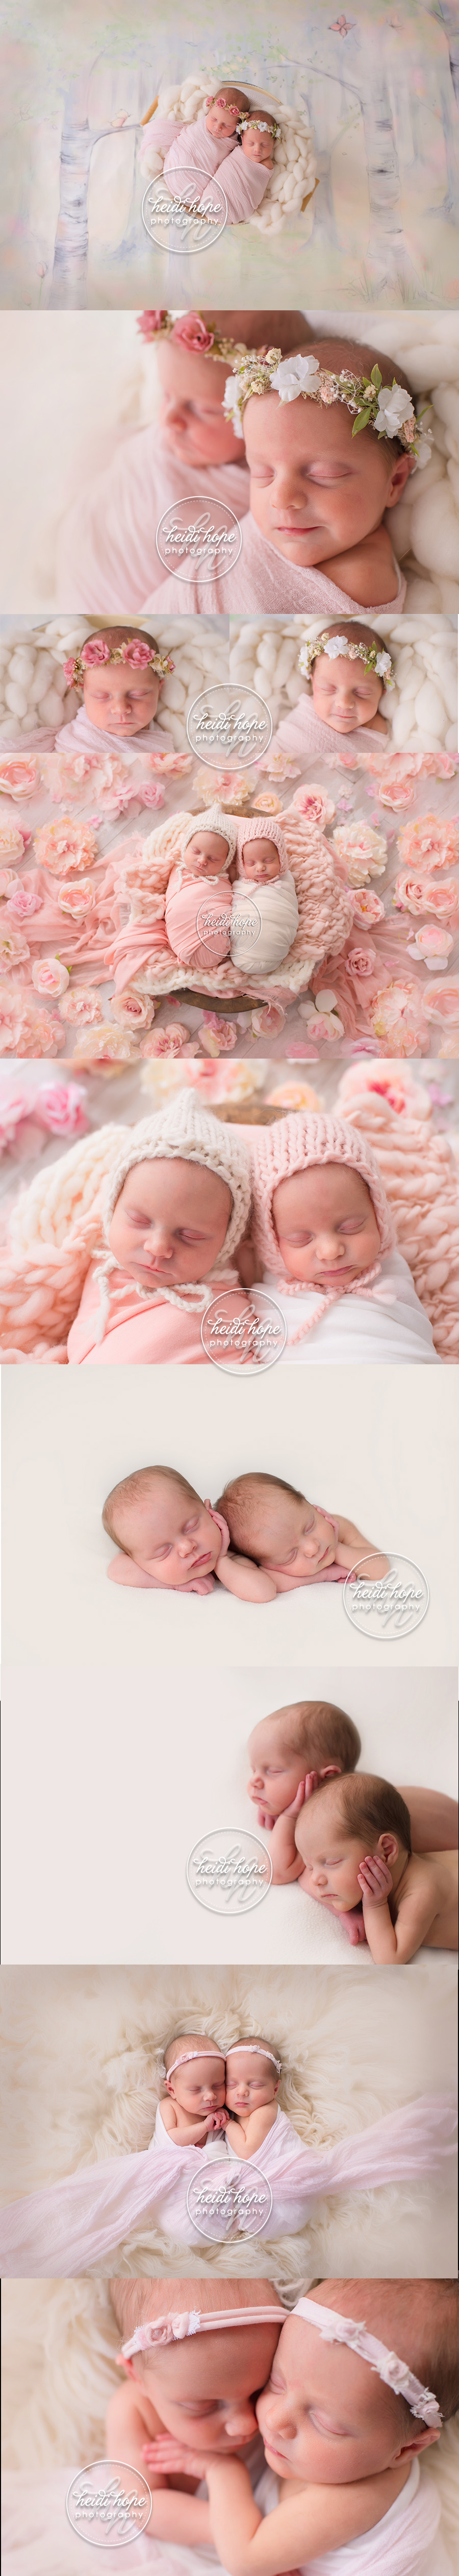 twin-girl-newborn-photoshoot-photographer